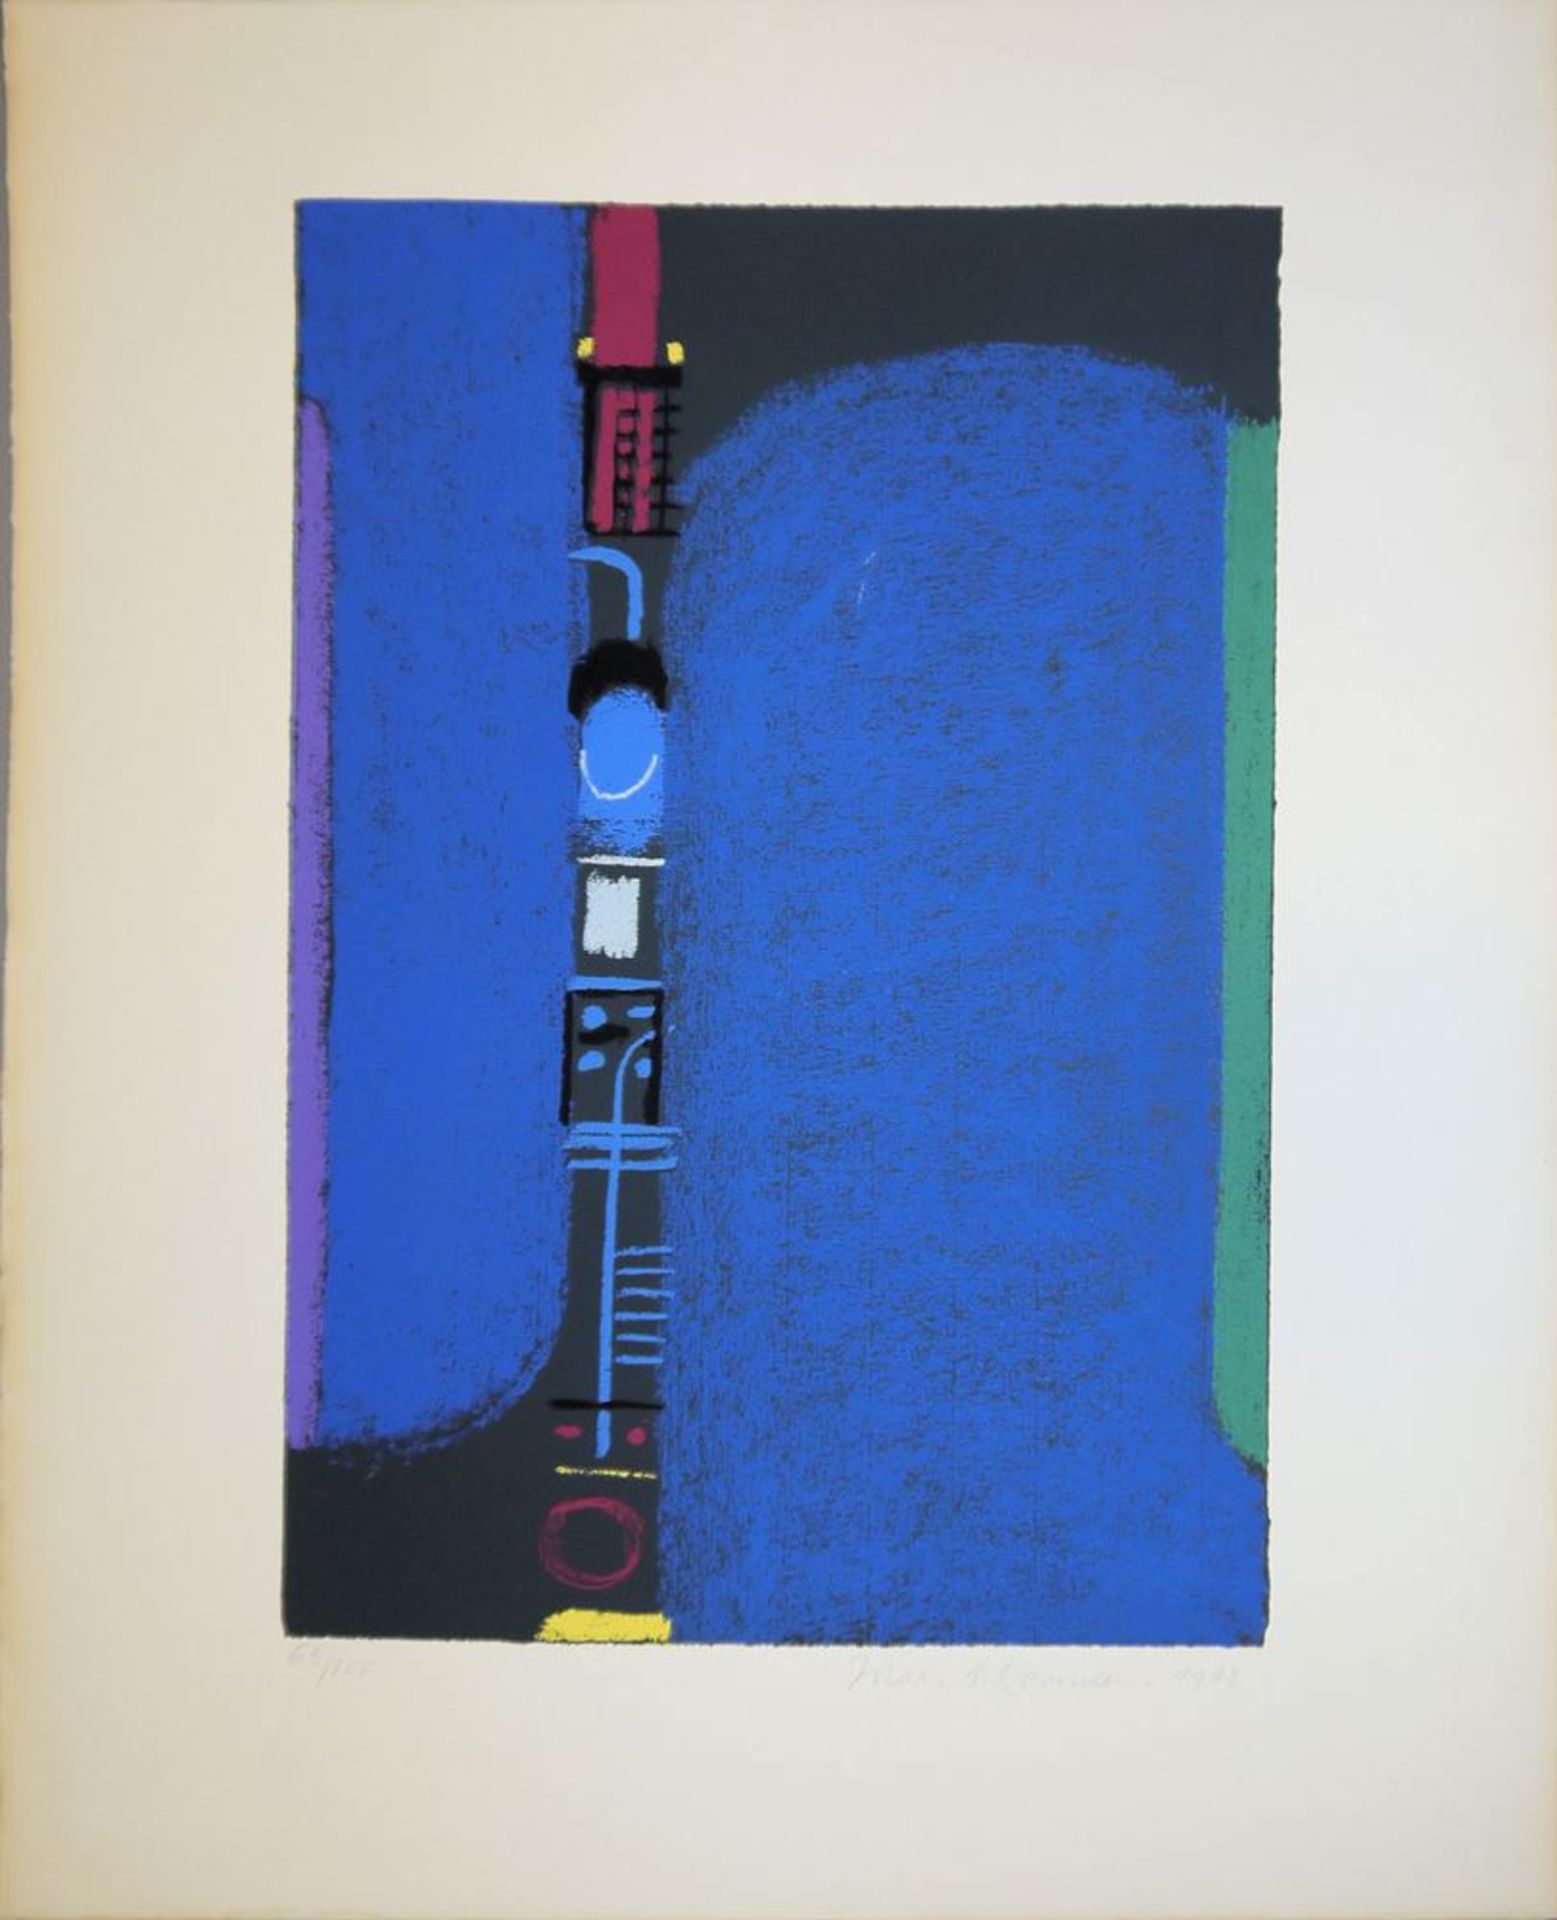 Max Ackermann, "Farbturm", signierte Farbserigraphie von 1972